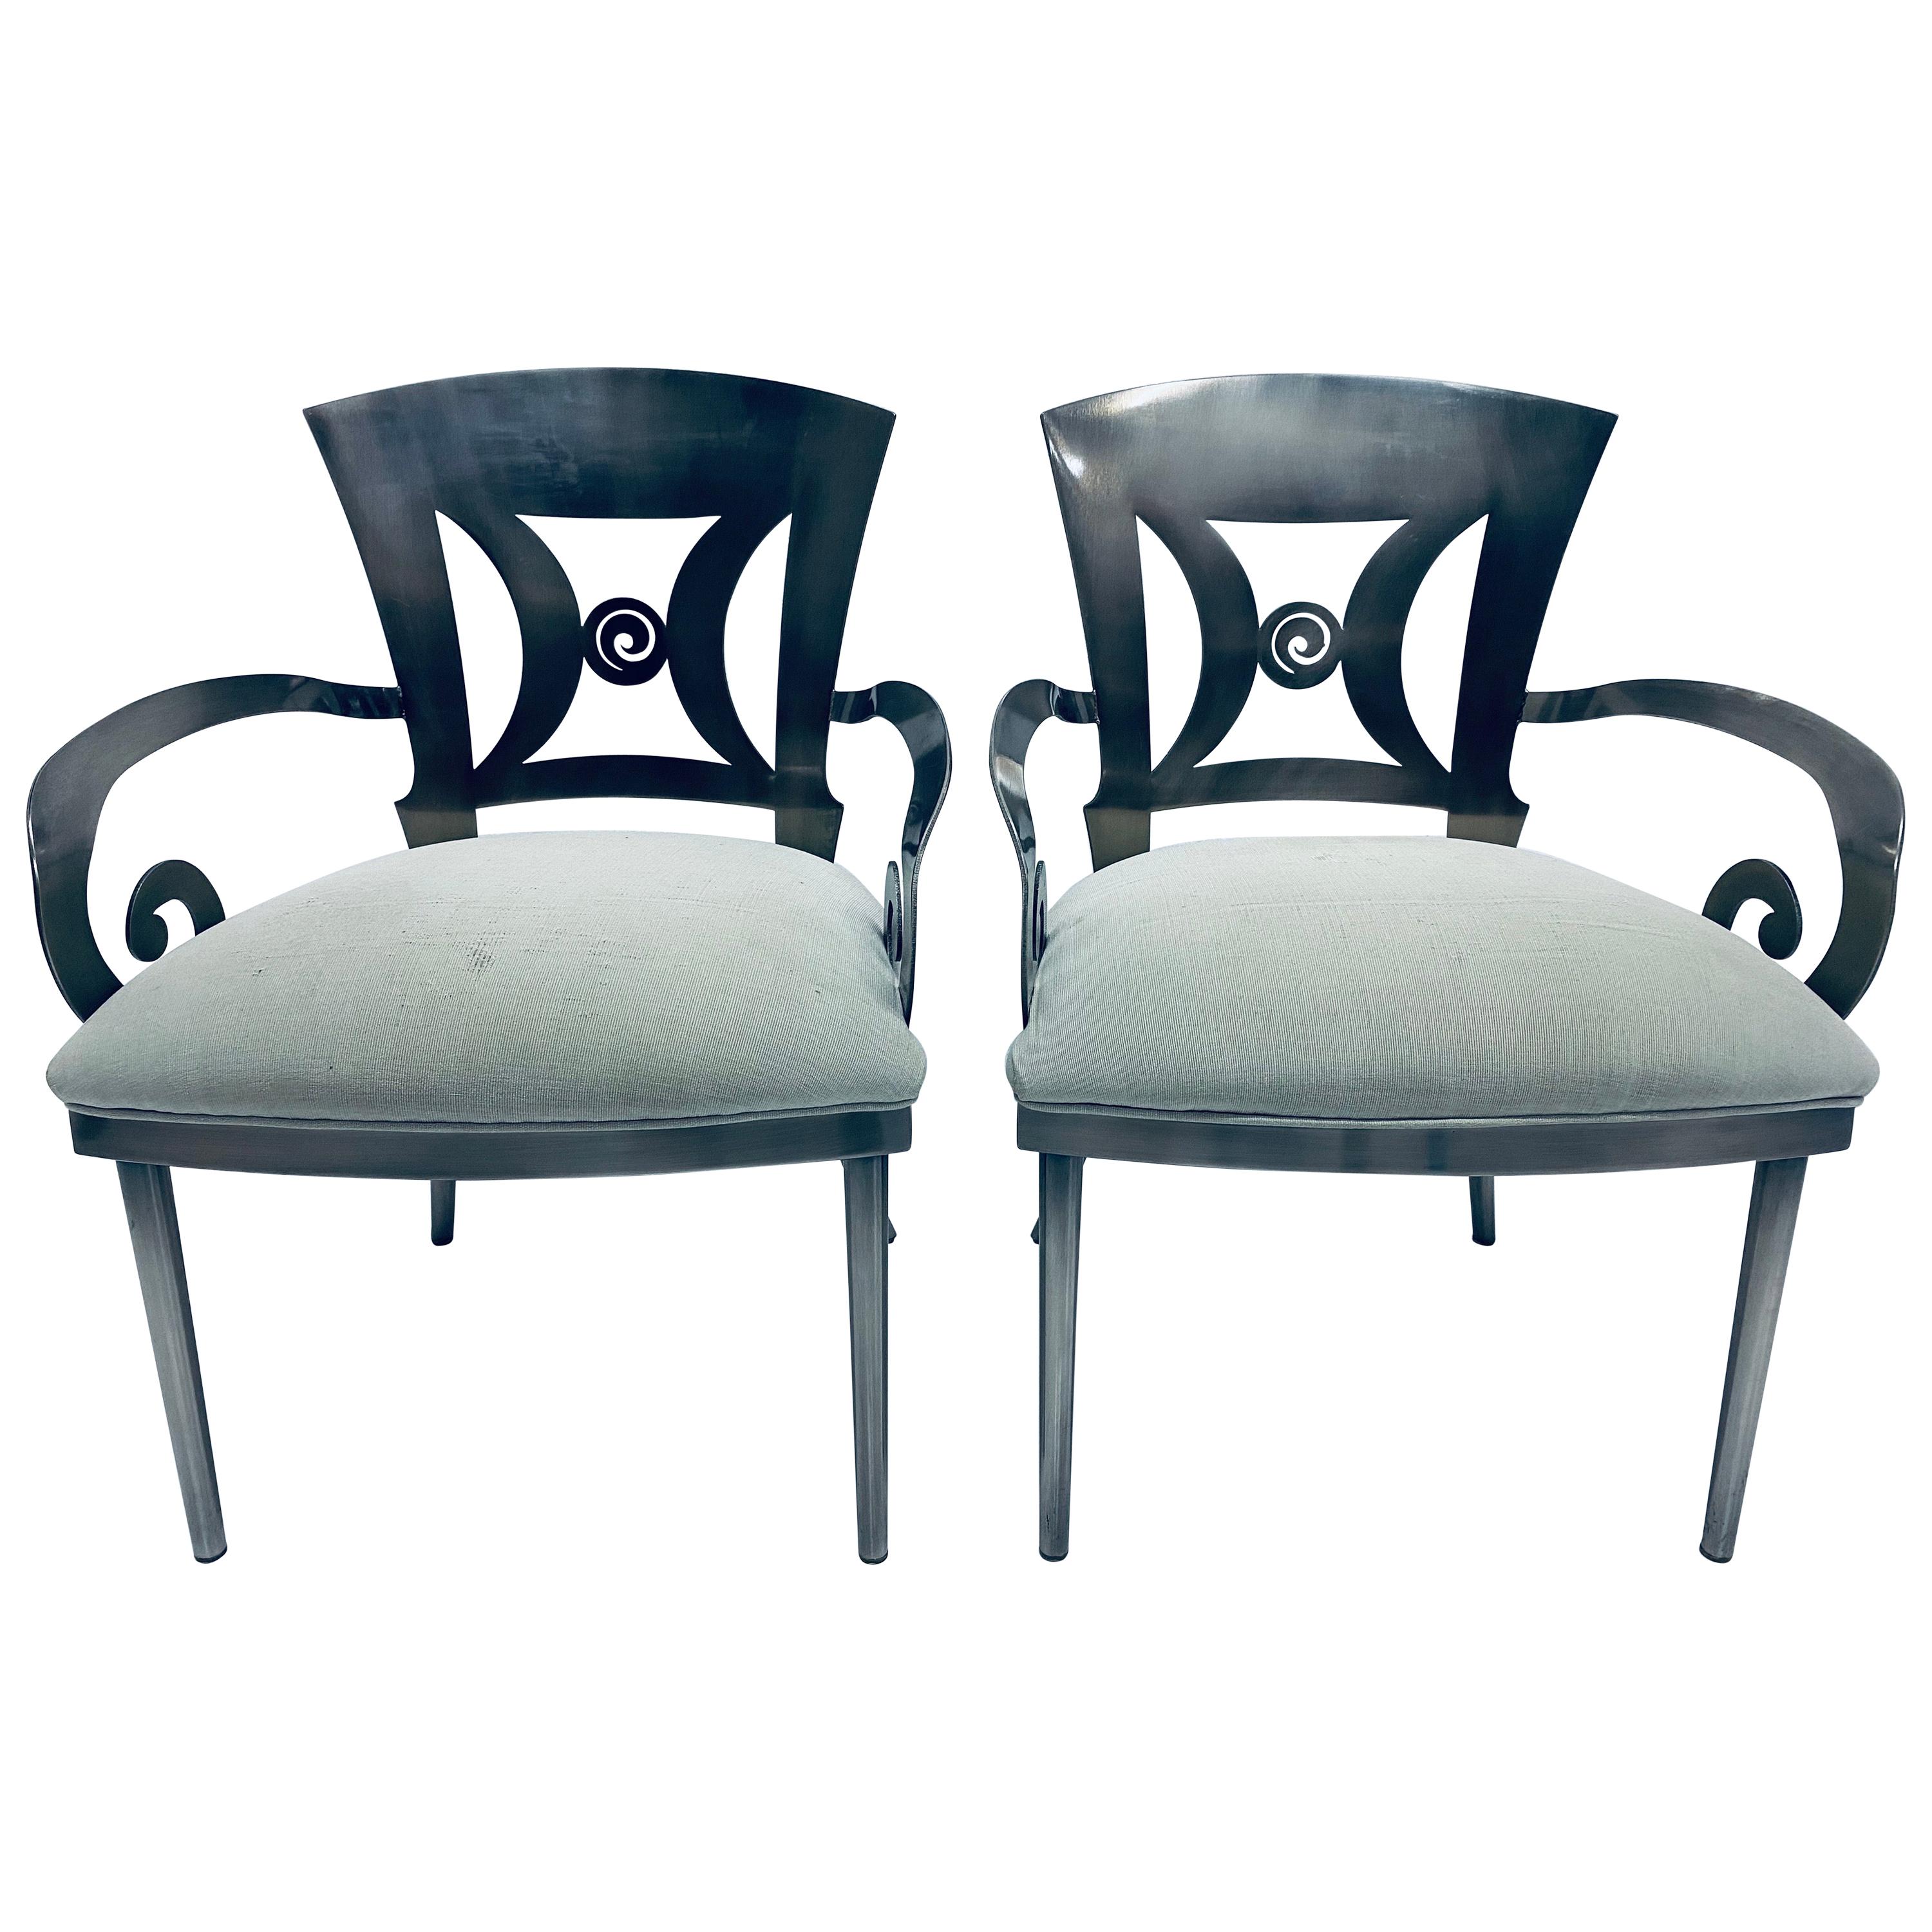 Paire de chaises de salle à manger ou d'appoint Design Institute of America DIA